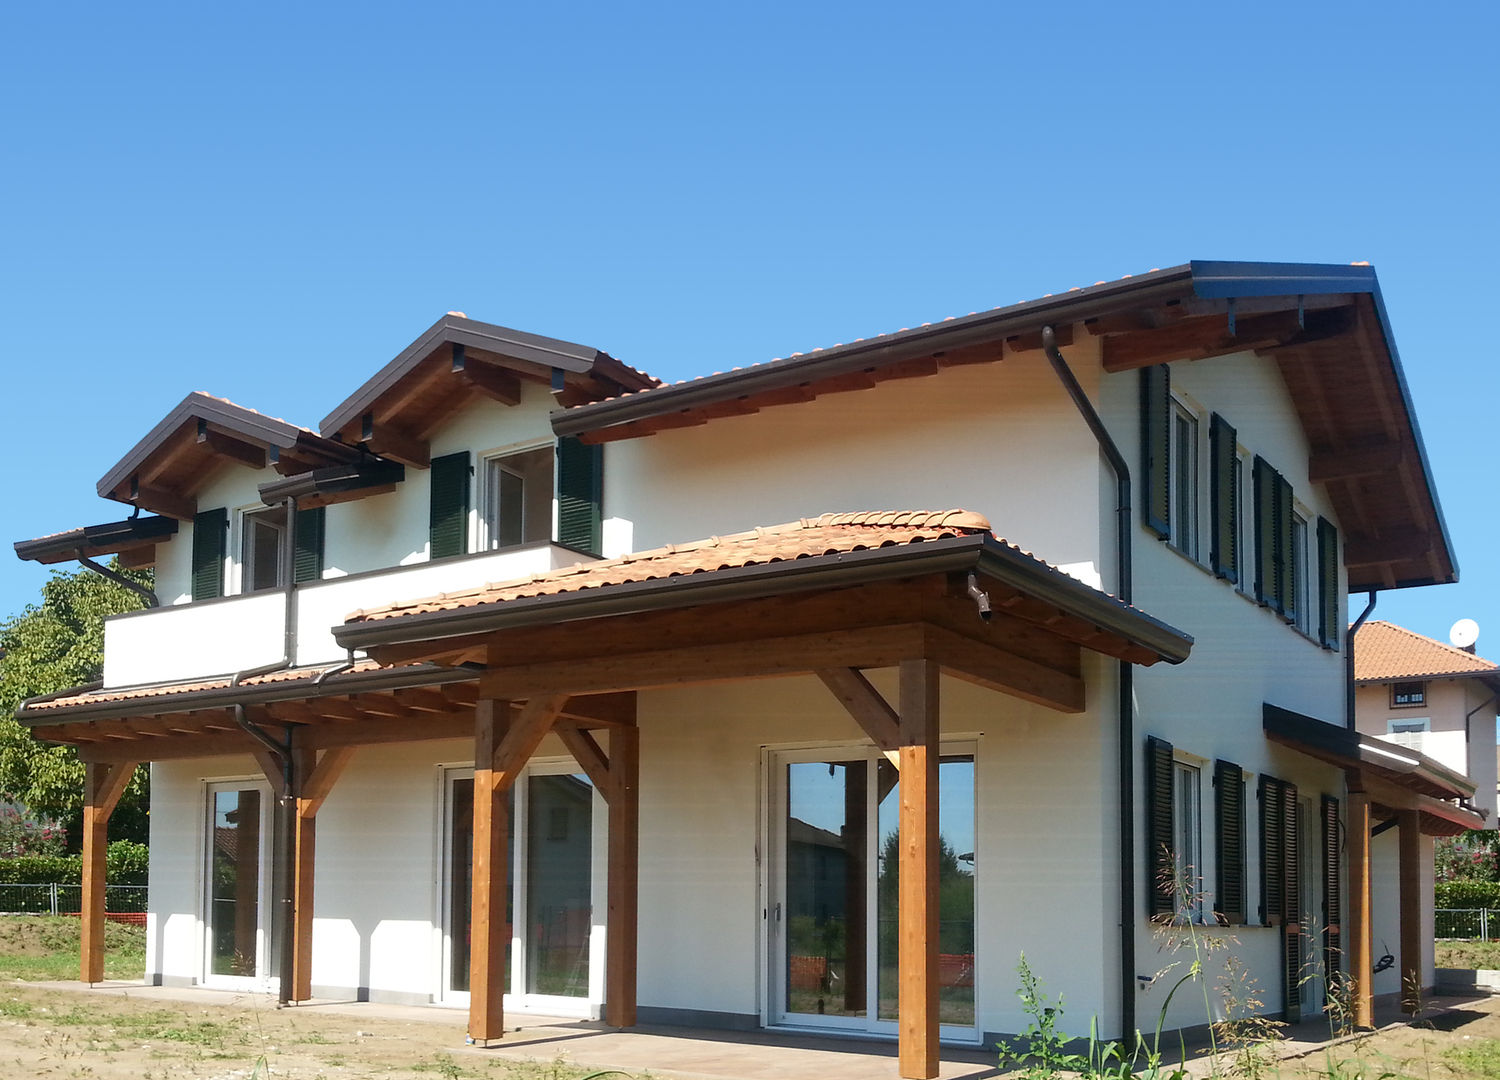 Villa prefabbricata in legno - Angera (VA), Marlegno Marlegno Casas prefabricadas Madera Acabado en madera